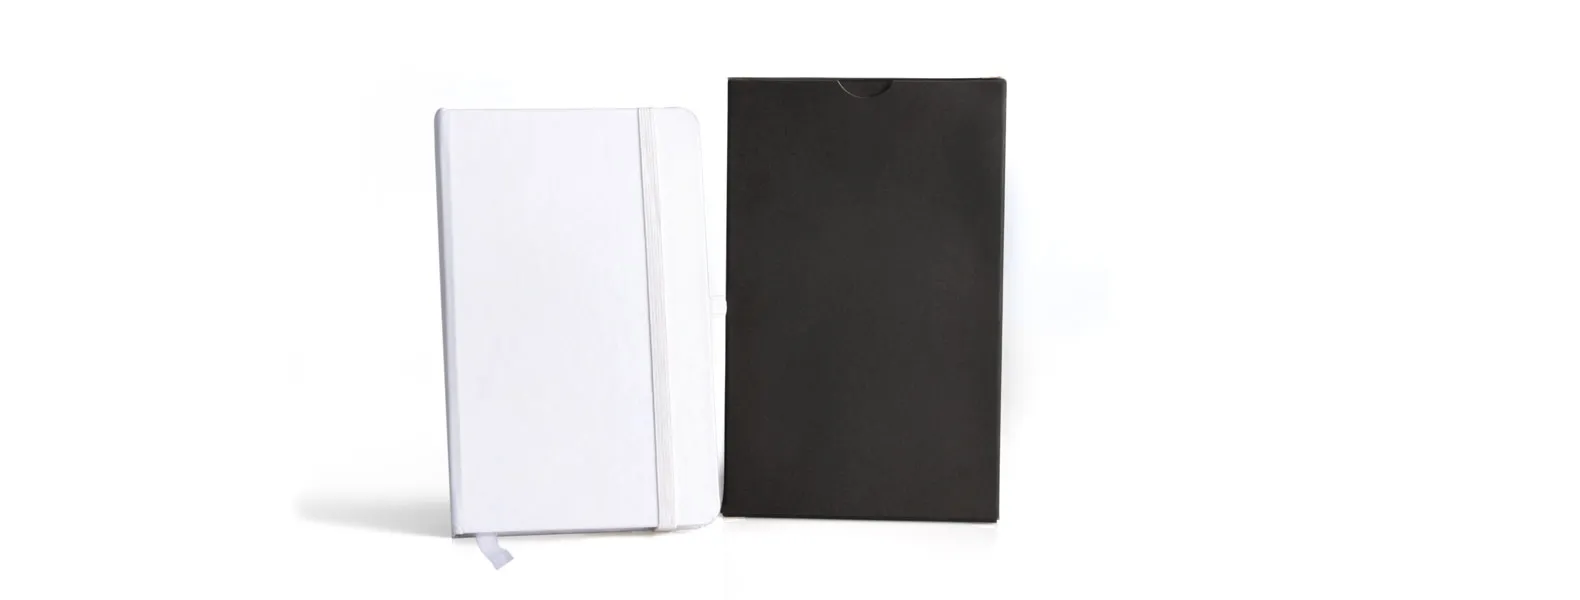 Caderno para anotações branco com capa dura. Conta com 80 folhas pautadas, marcador de página, porta caneta e elástico para fechamento. Gramatura da folha de 70 g/m2.